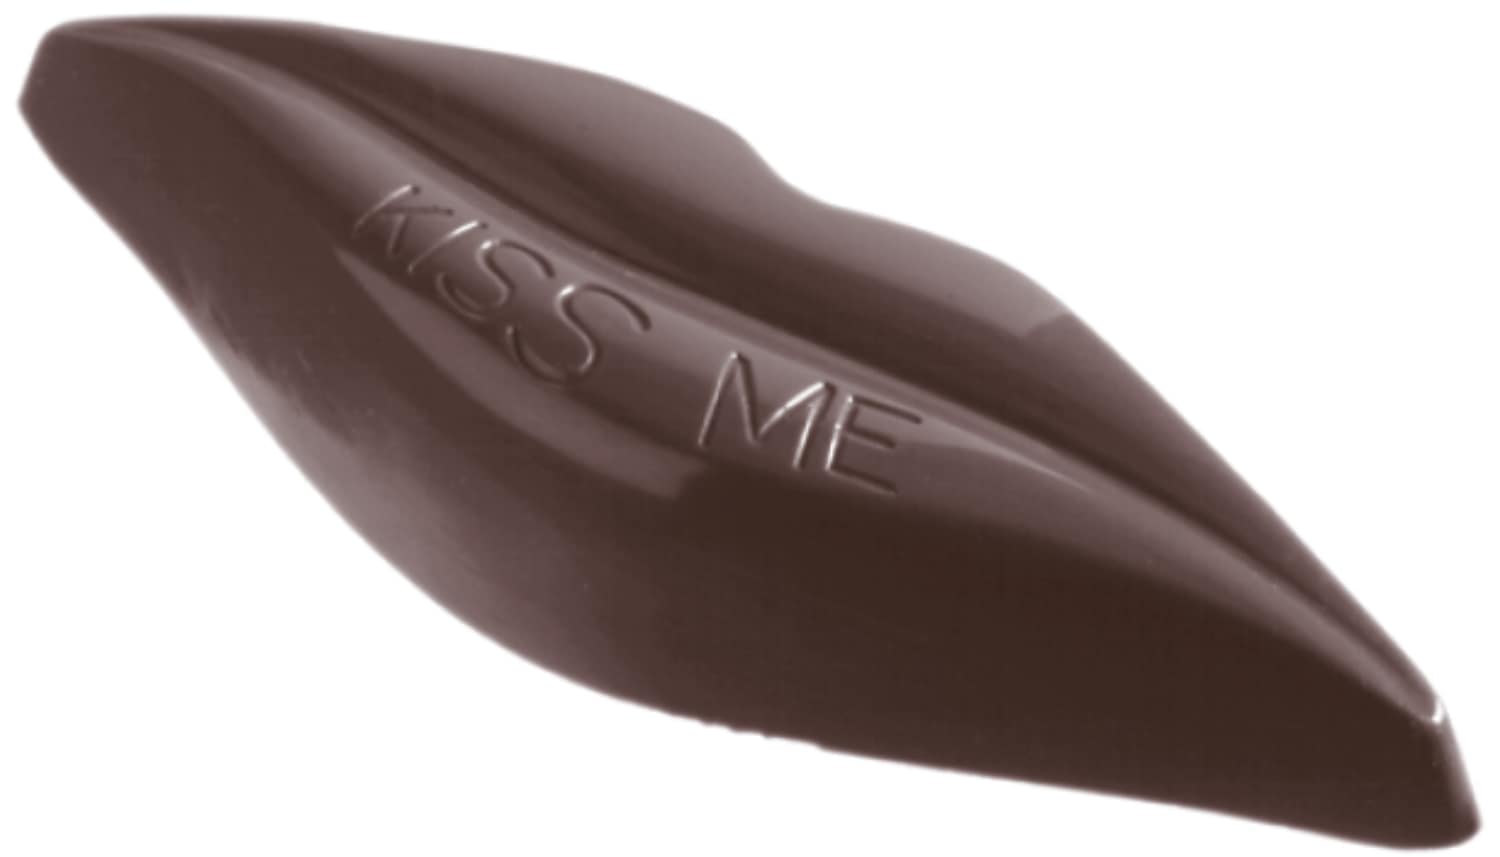 Schokoladenform "Kussmund" 421297